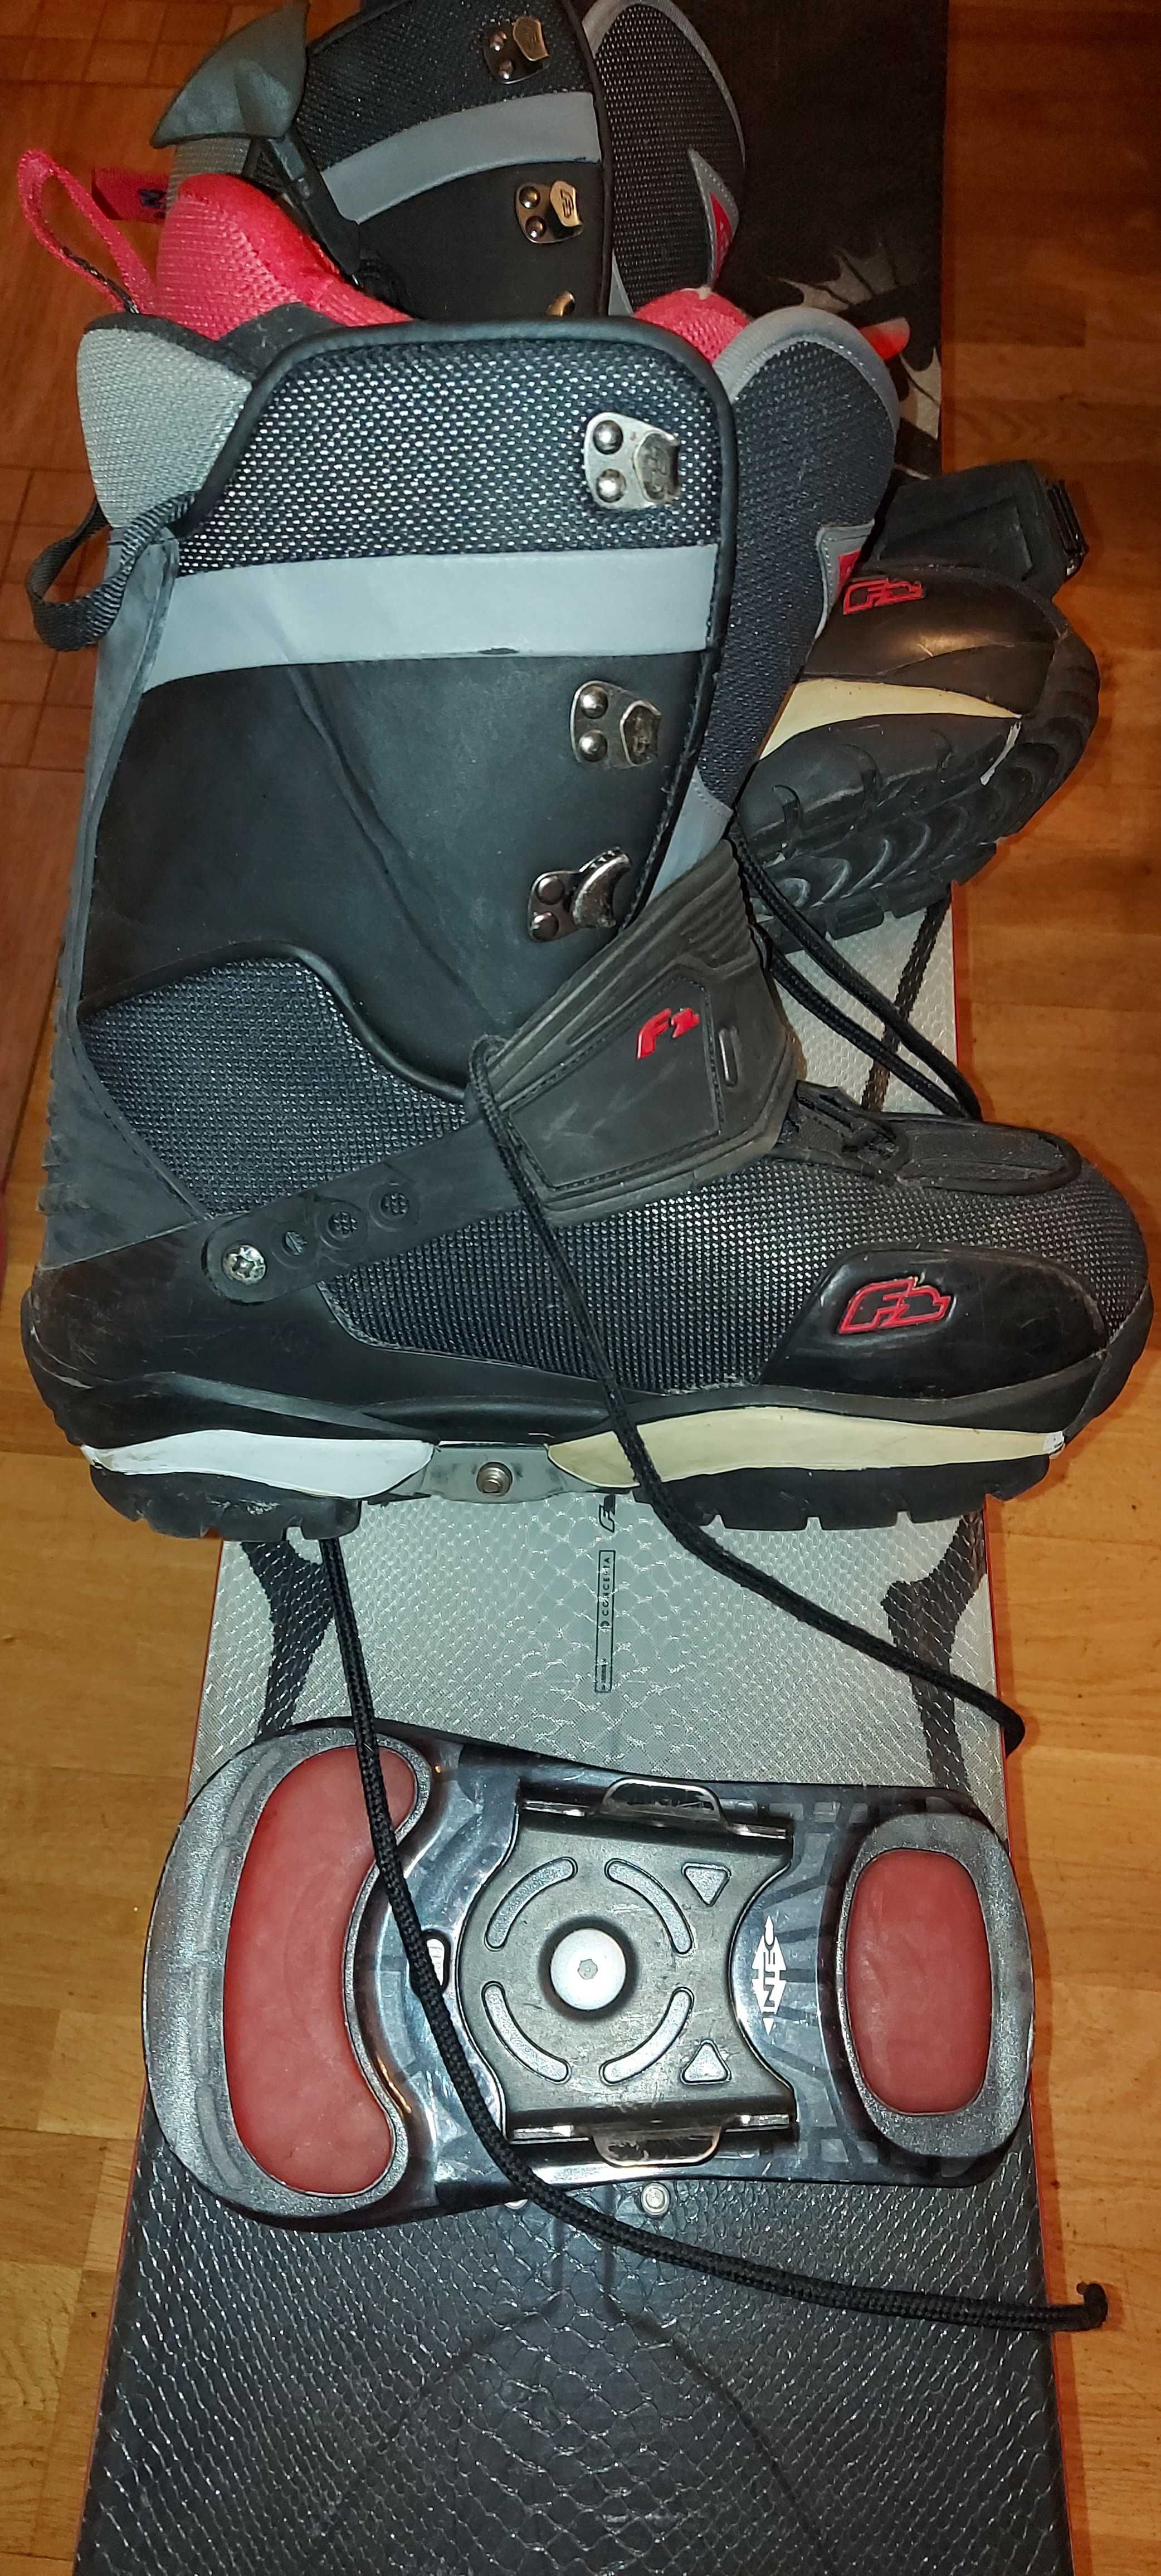 Deska snowboardowa F2 Eliminator LTD + wiązania + buty